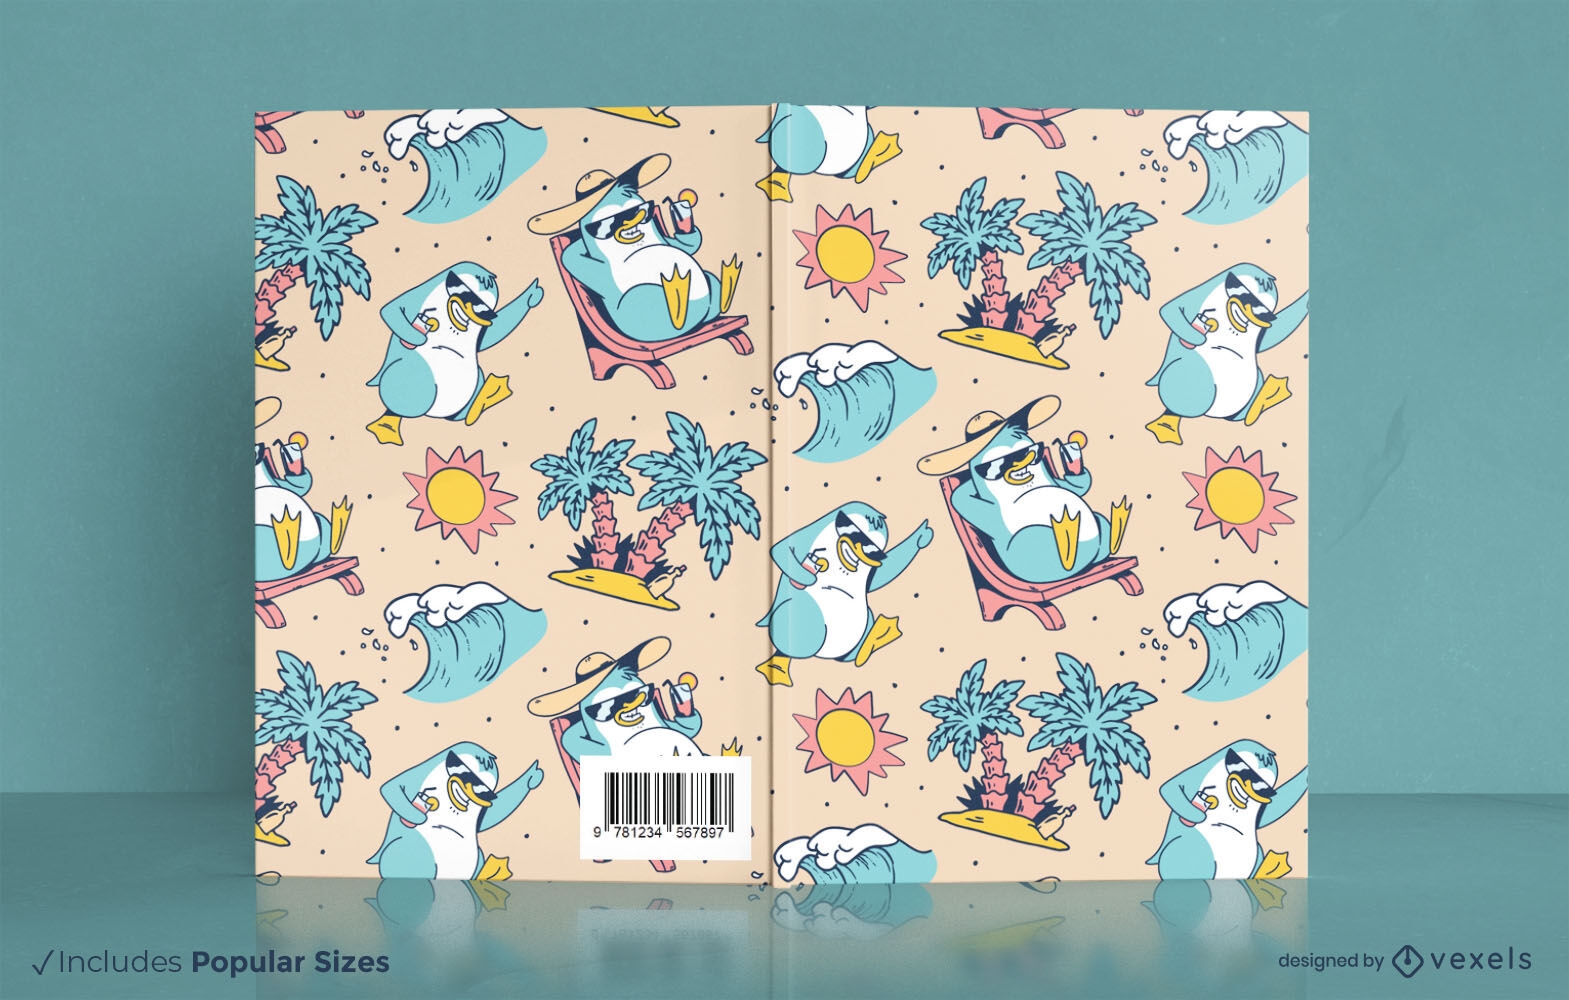 Descarga Vector De Diseño De Portada De Libro De Animales Pingüinos En  Verano.